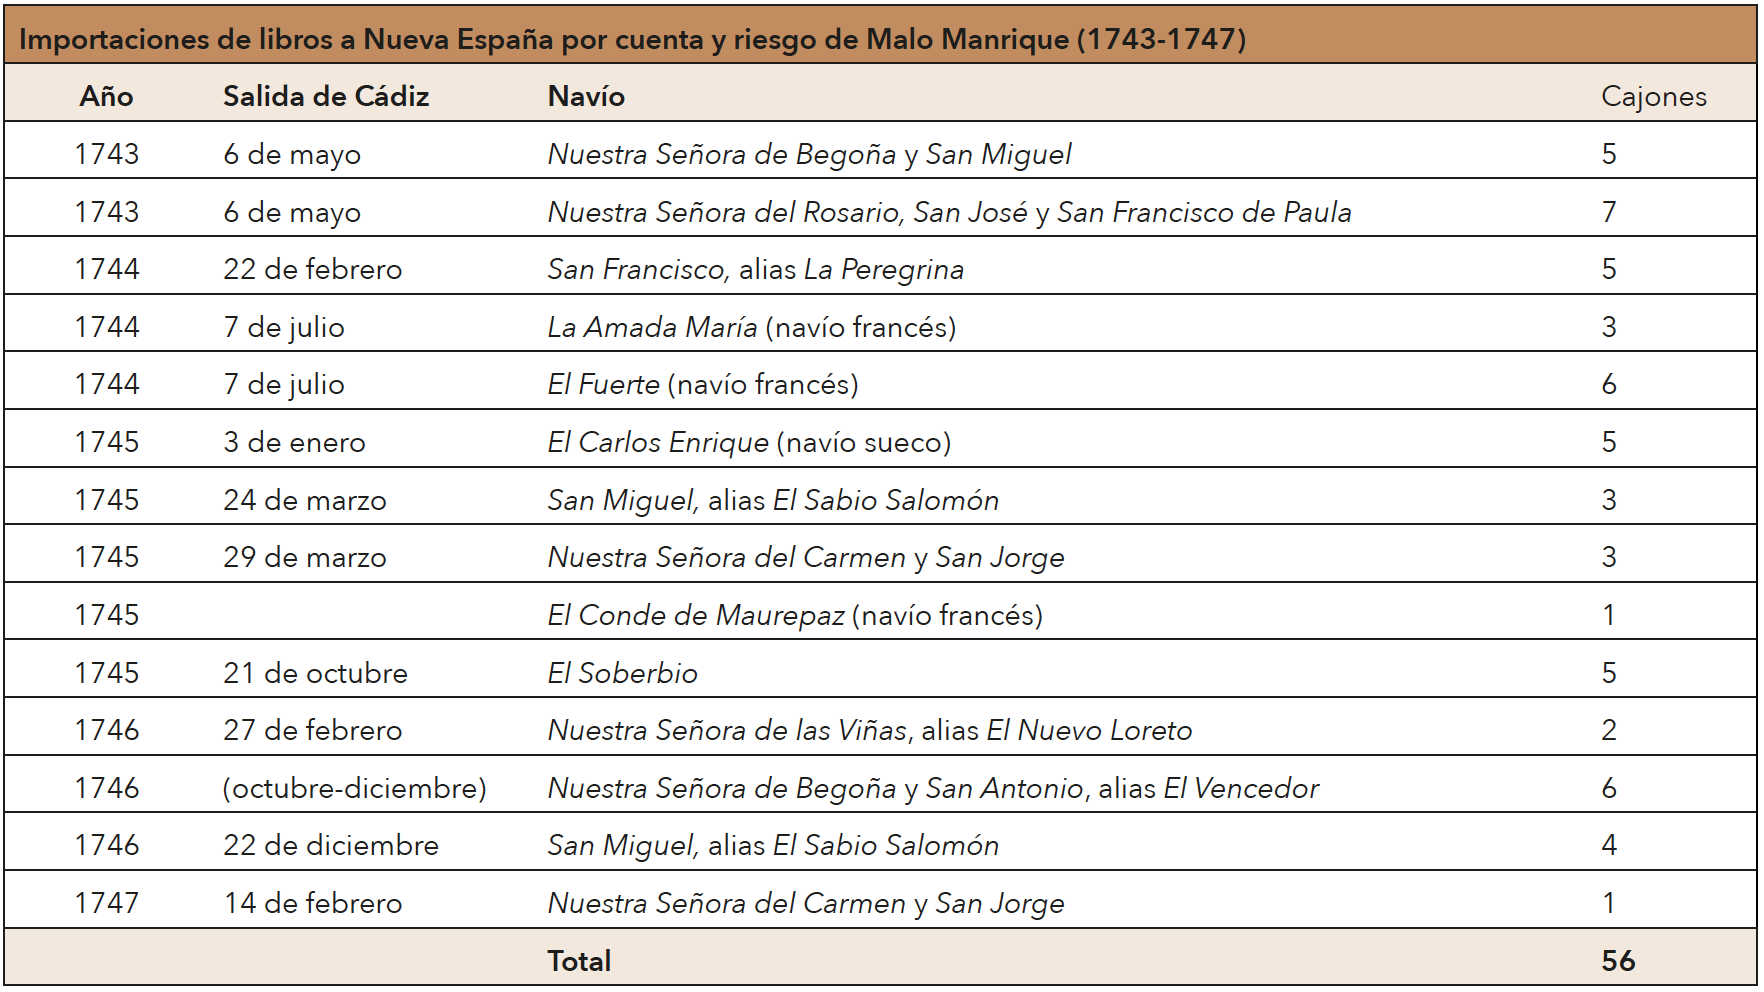 Fuente: elaboración propia a partir de AGI, Contratación, Registros
de ida a Veracruz, naos sueltas, legs. 1486-1520.